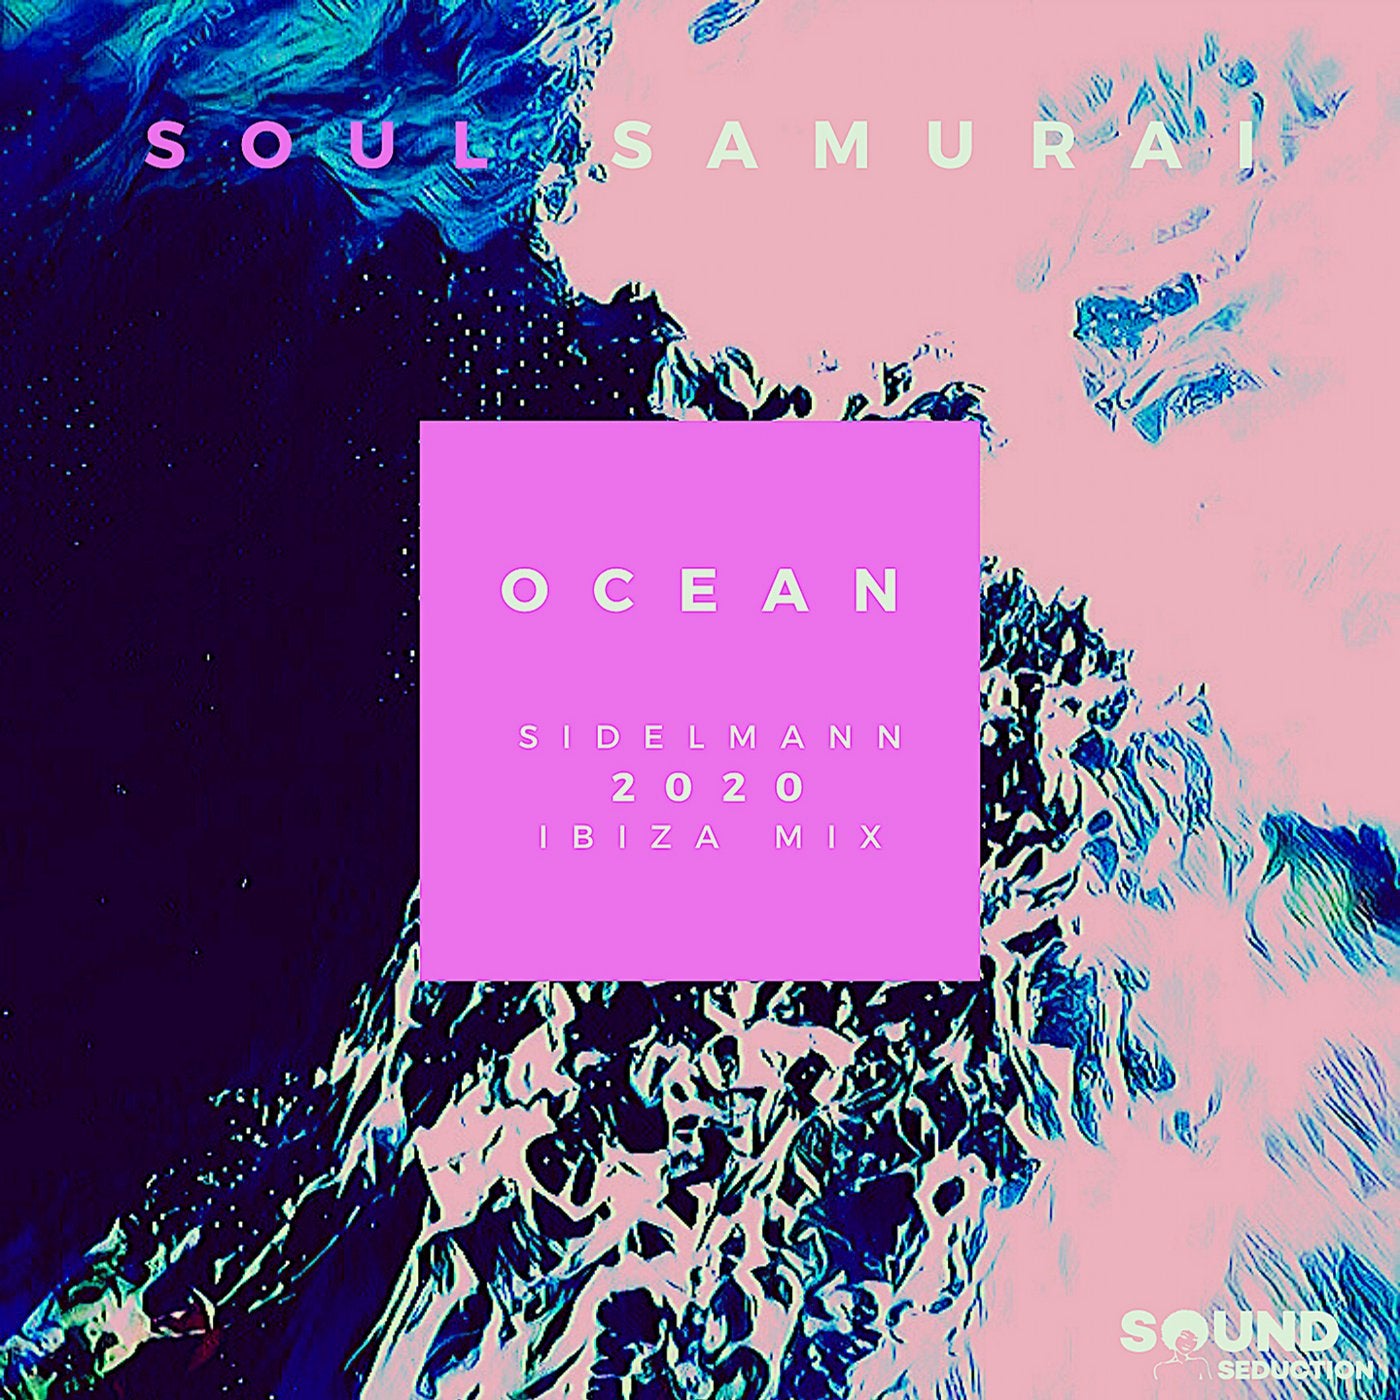 Ocean (Sidelmann 2020 Ibiza Mix)